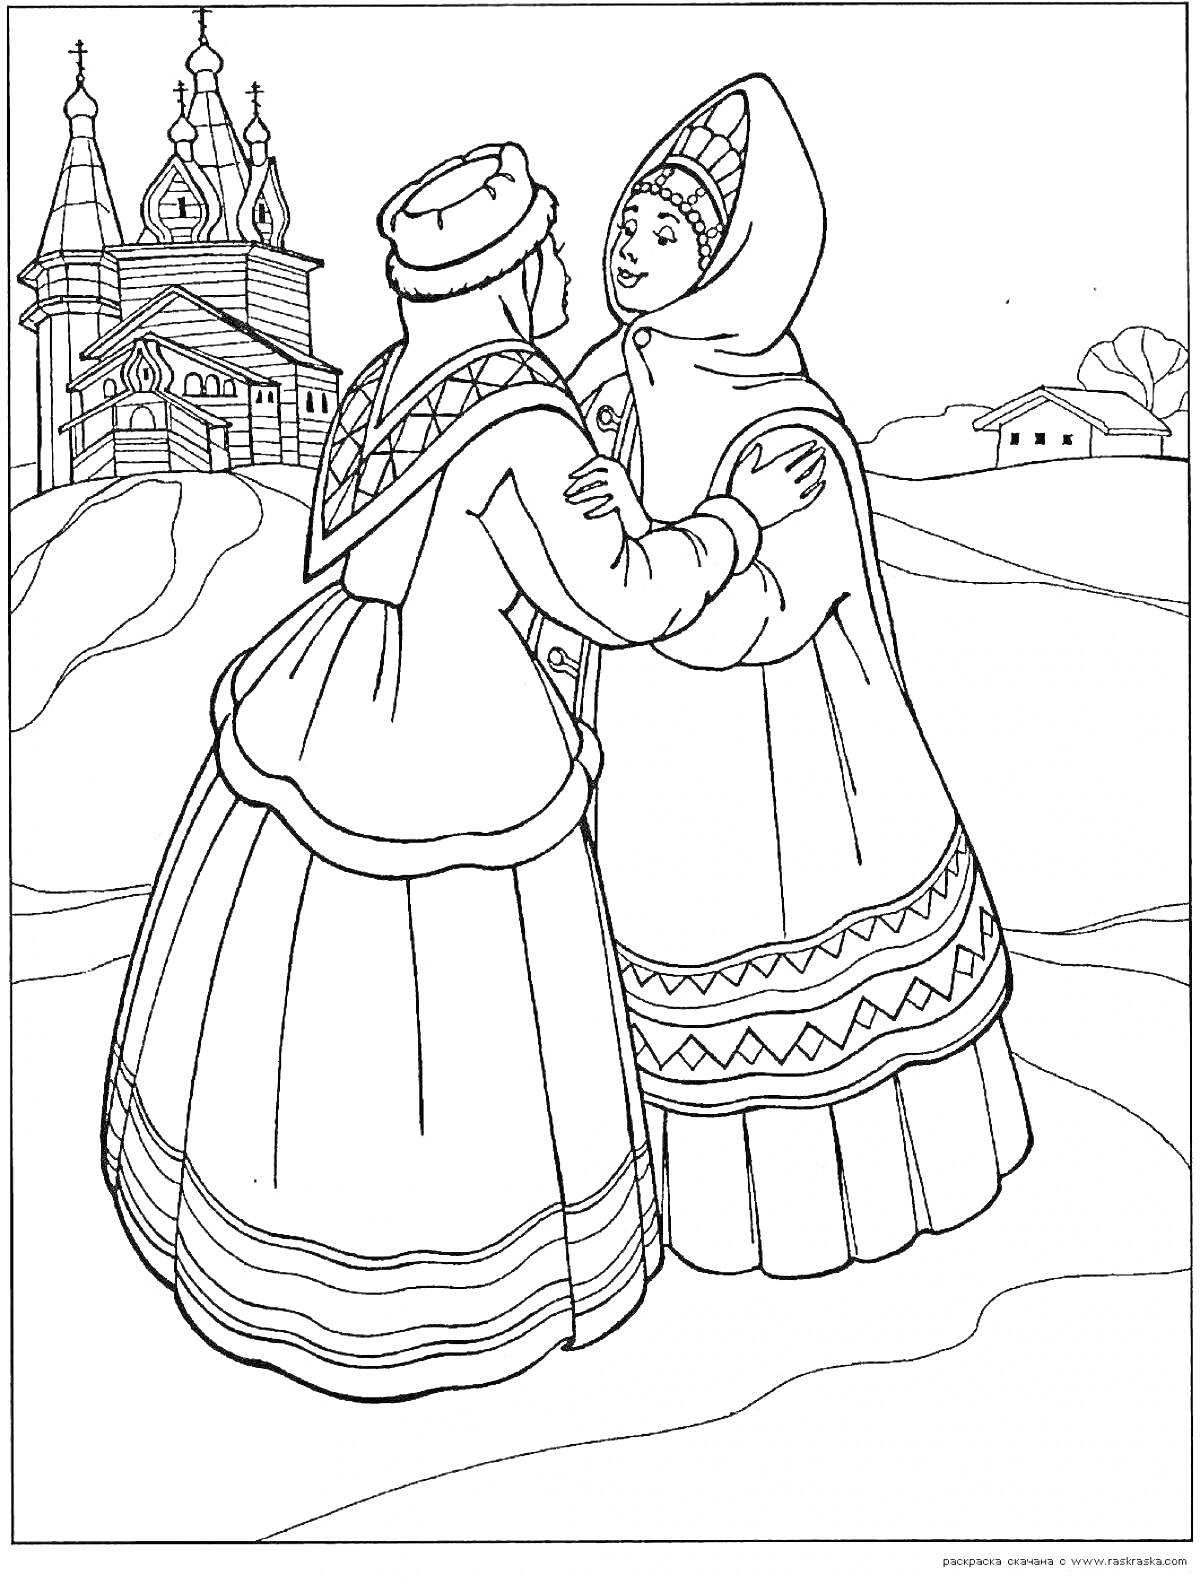 Раскраска Две женщины в традиционной одежде на фоне деревянной церкви и снежного пейзажа